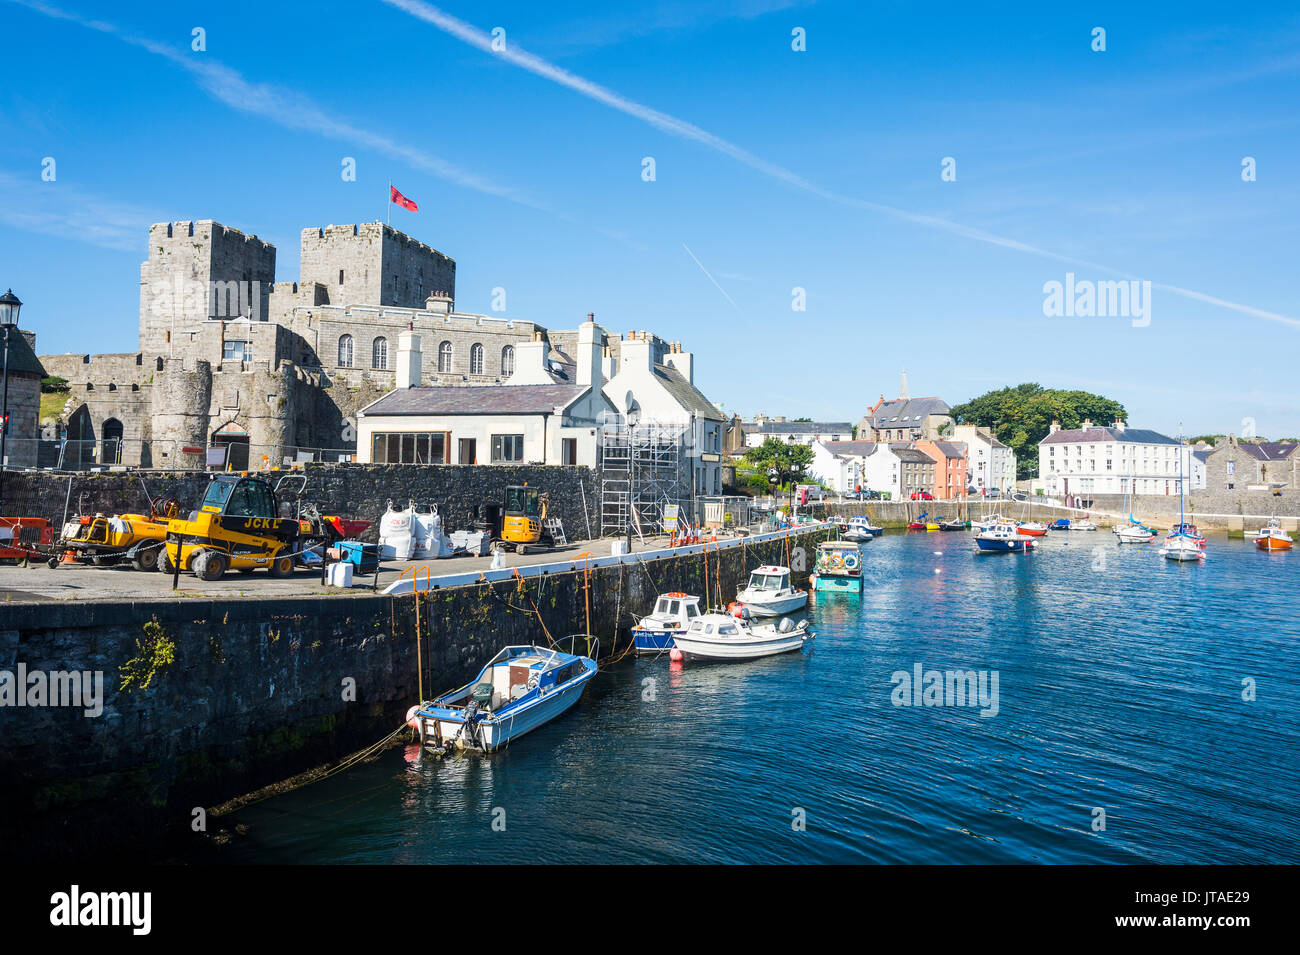 Puerto de Castletown, Isla de Man, dependencia de la corona del Reino Unido, Europa Foto de stock